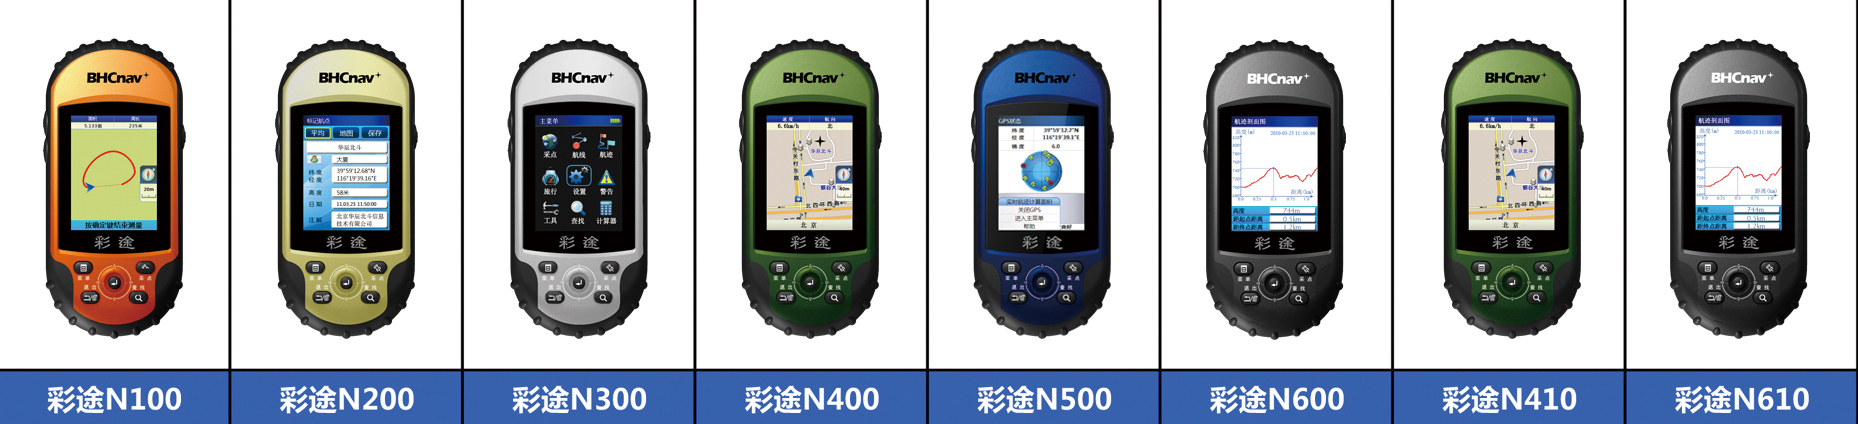 Handheld GPS   NAVA200